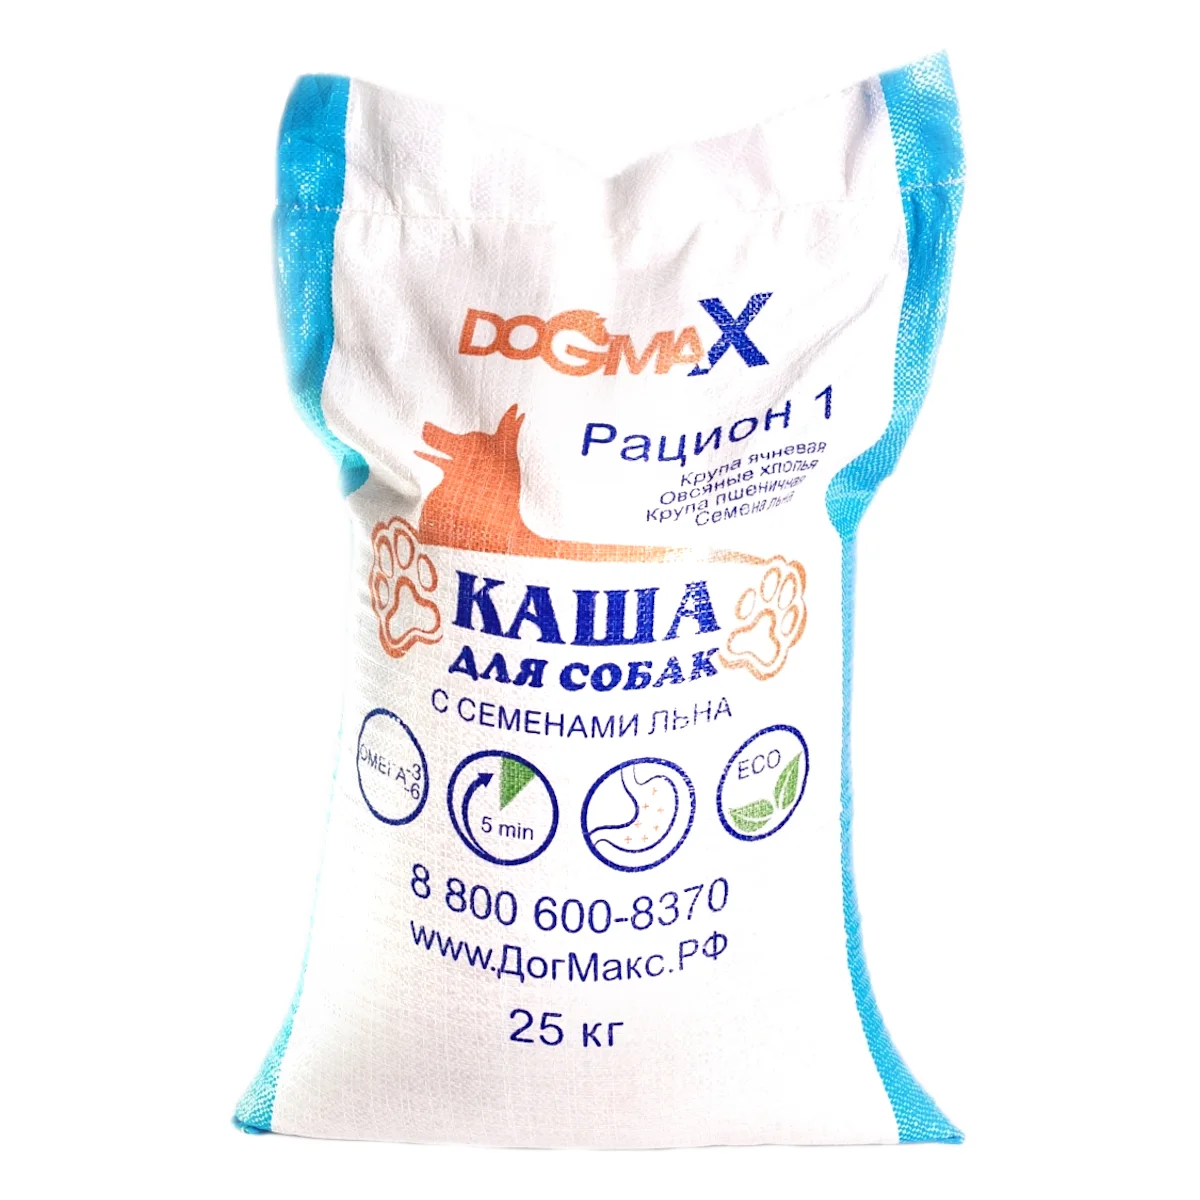 DOGMAX dog food Ration 1 (25 kg)